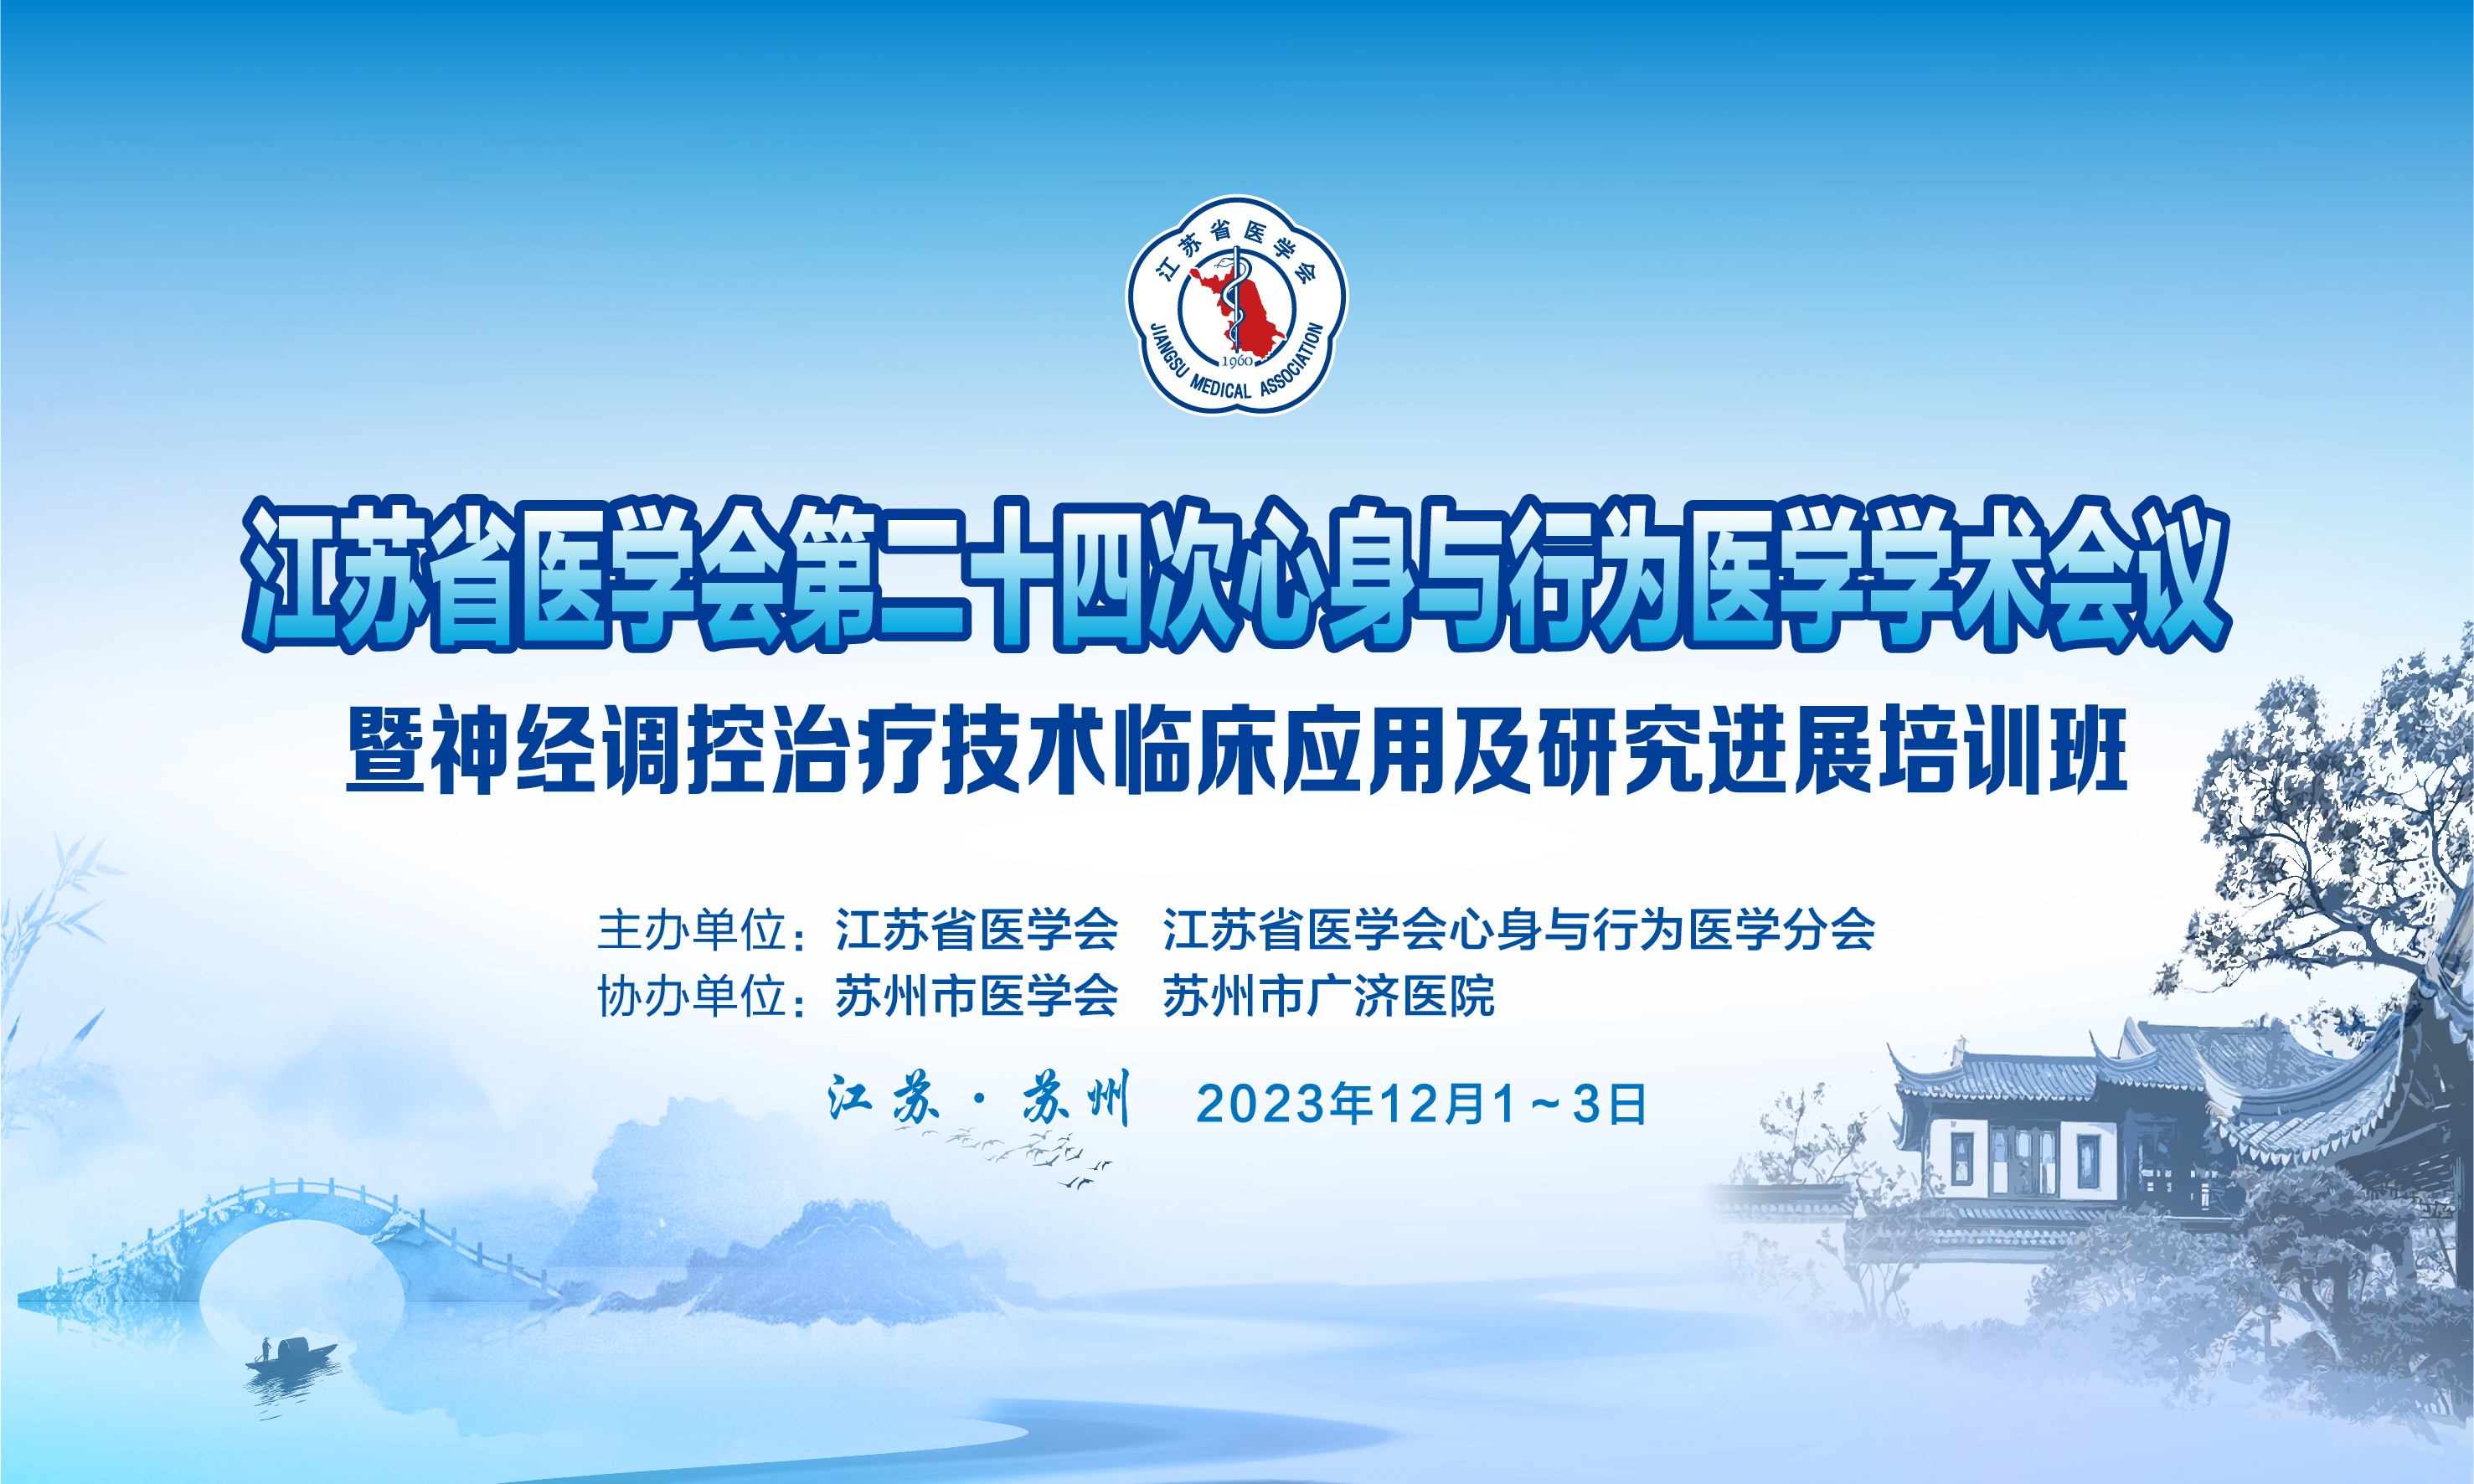 江苏省医学会第二十四次心身与行为医学学术会议